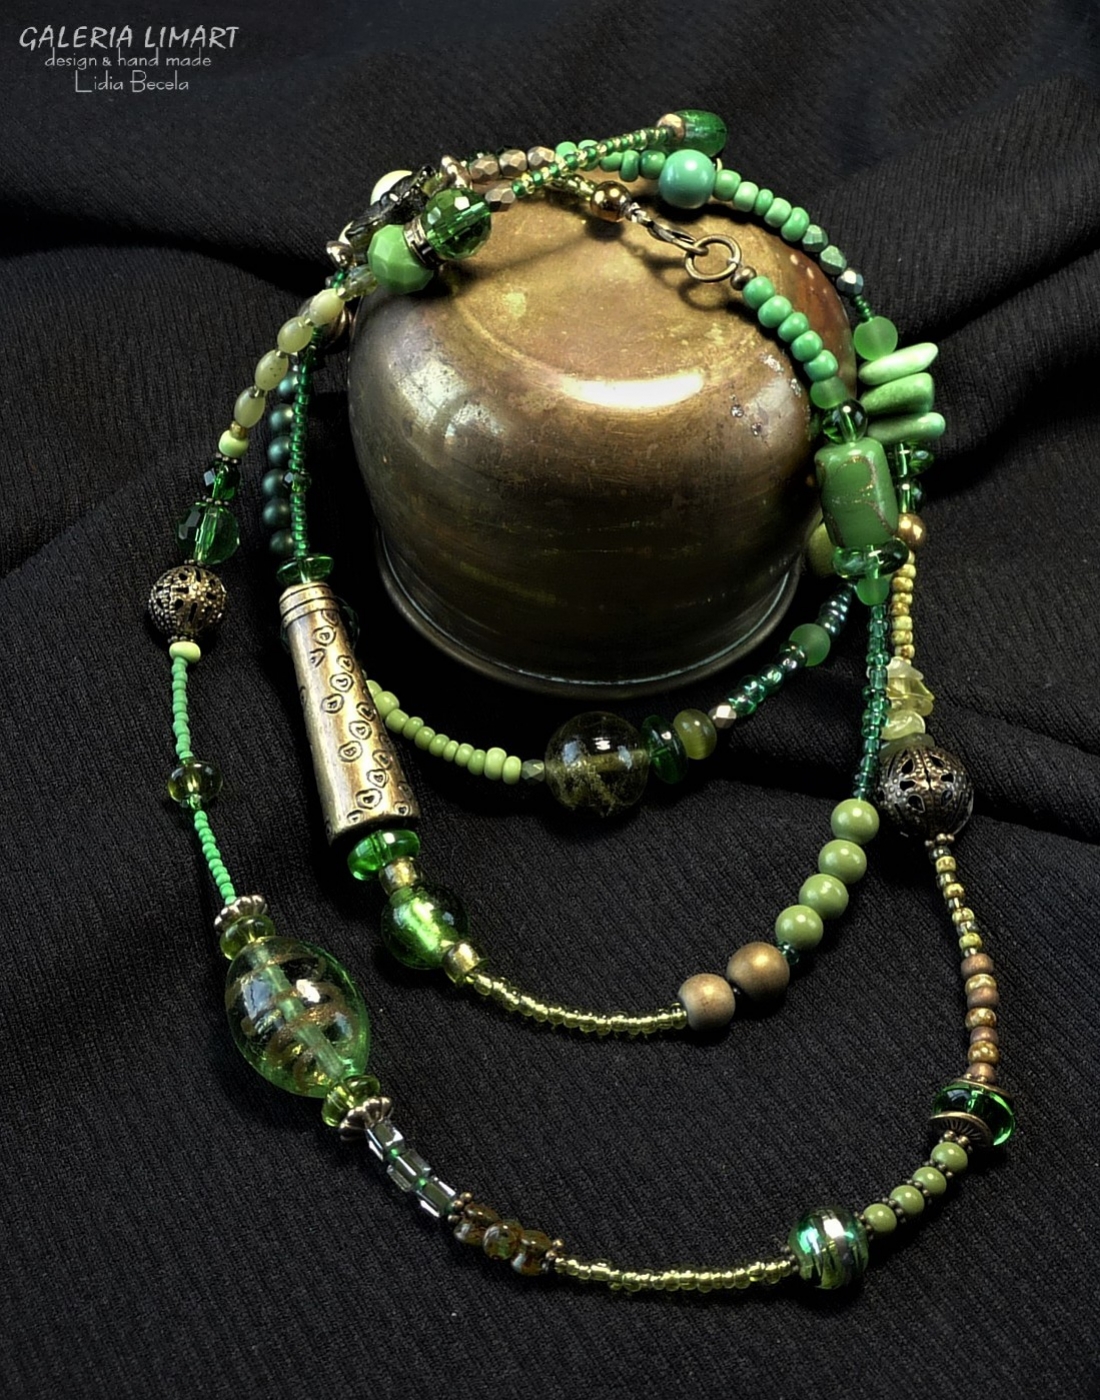 naszyjnik z drobnych szklanych koralików seed beads, kryształków w zielono-starozłotej tonacji. Efektowny i ciekawy, znakomity dla osoby kochającej styl boho